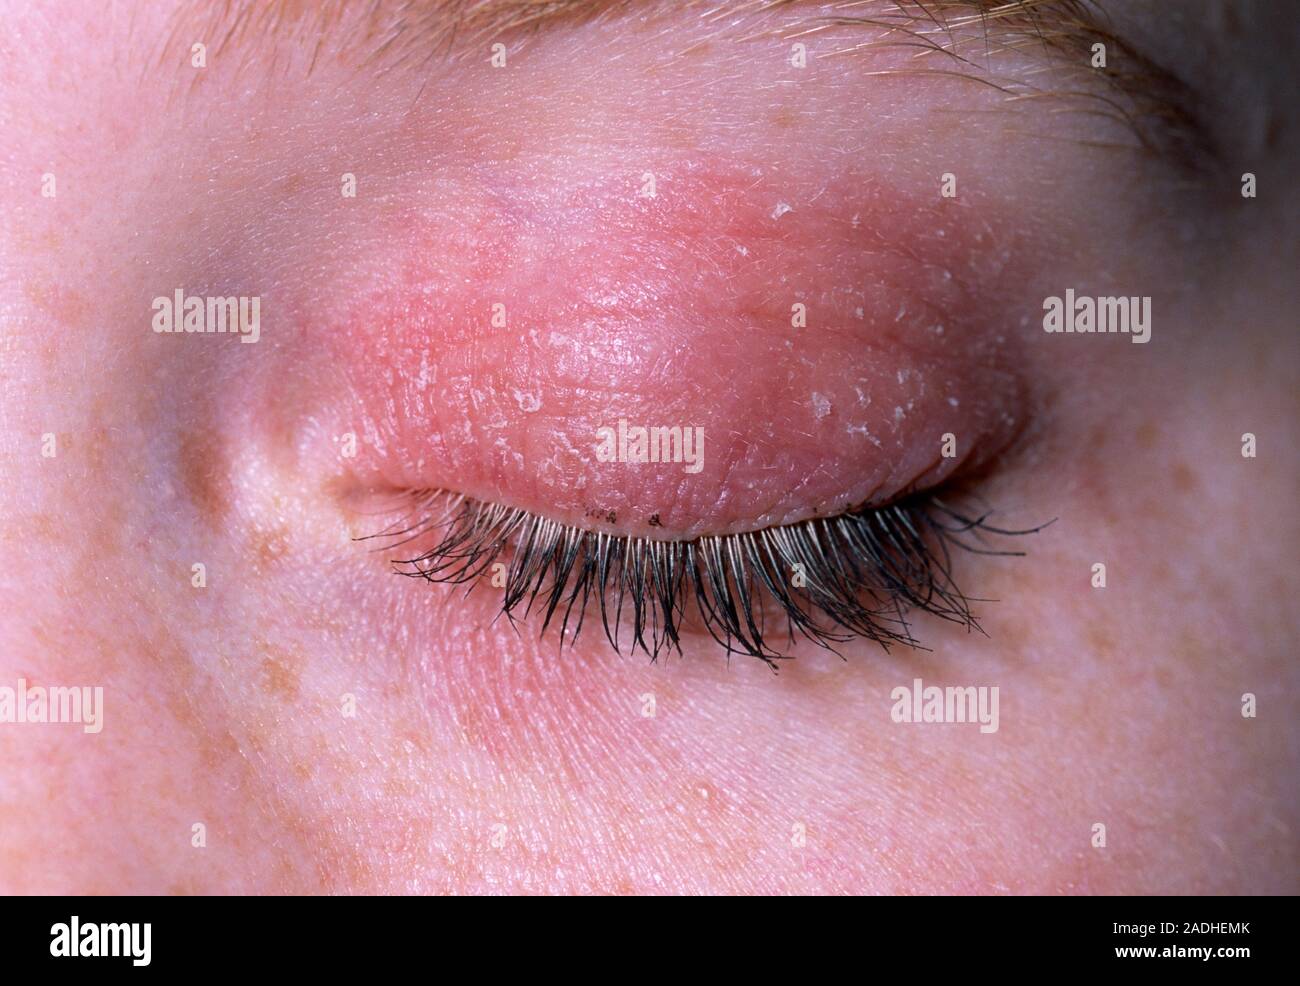 Ekzem auf augenlied. Close-up ein ekzem Hautausschlag auf dem Augenlid  eines 18-jährigen Mädchens. Ein Ekzem ist eine oberflächliche Entzündung  der Haut (Dermatitis) kennzeichnen Stockfotografie - Alamy